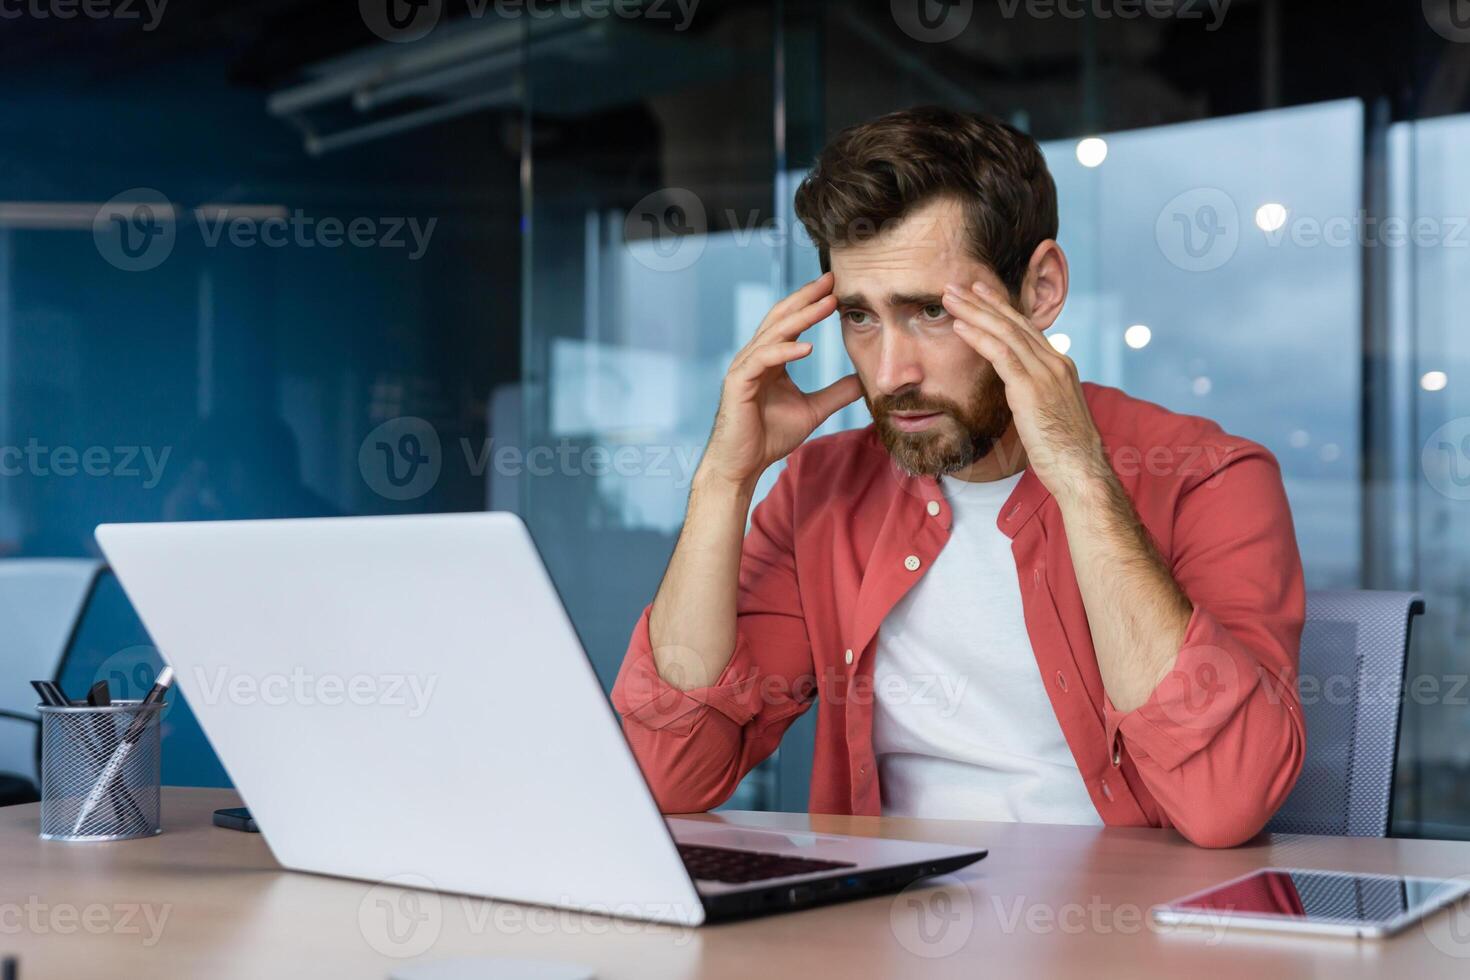 frustrerad affärsman deprimerad på arbetsplats arbetssätt på bärbar dator, man i skjorta upprörd och ledsen missnöjd med dålig arbete resultat och prestation inuti kontor. foto